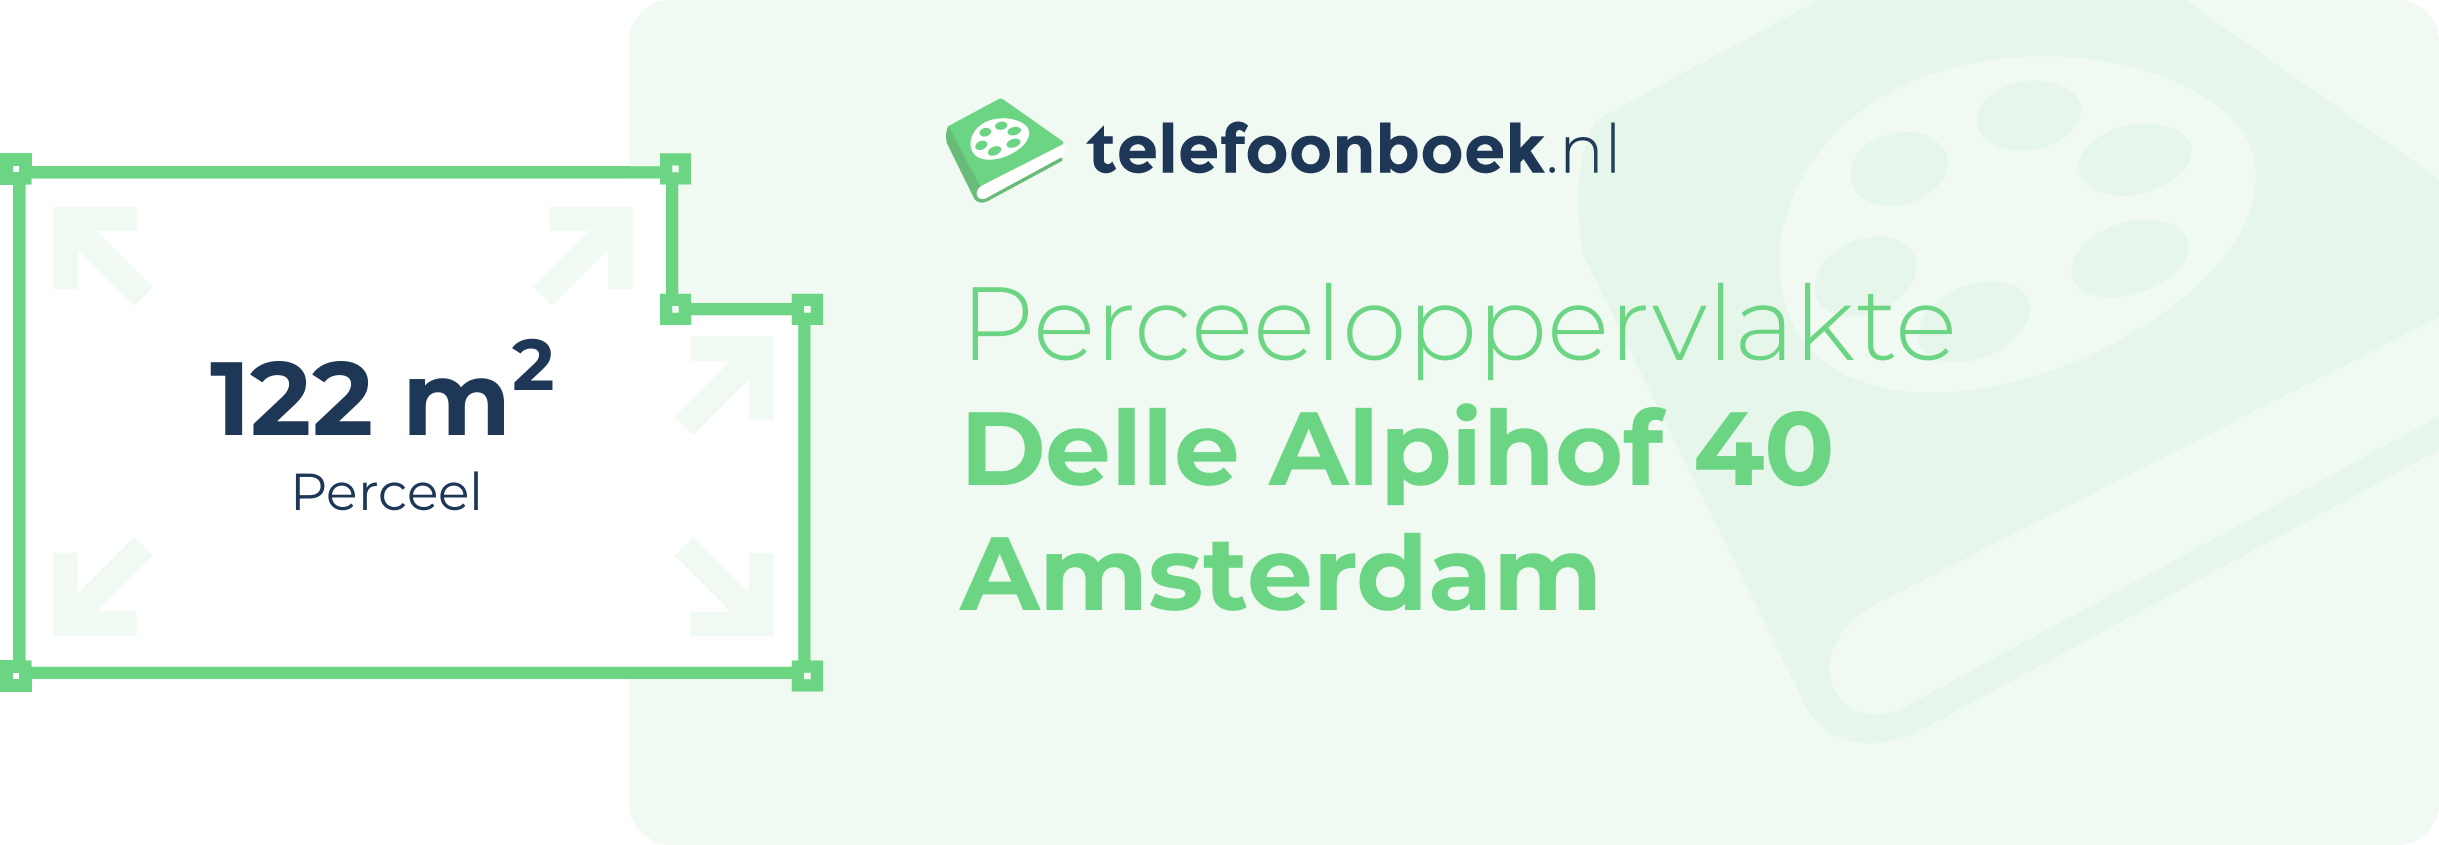 Perceeloppervlakte Delle Alpihof 40 Amsterdam